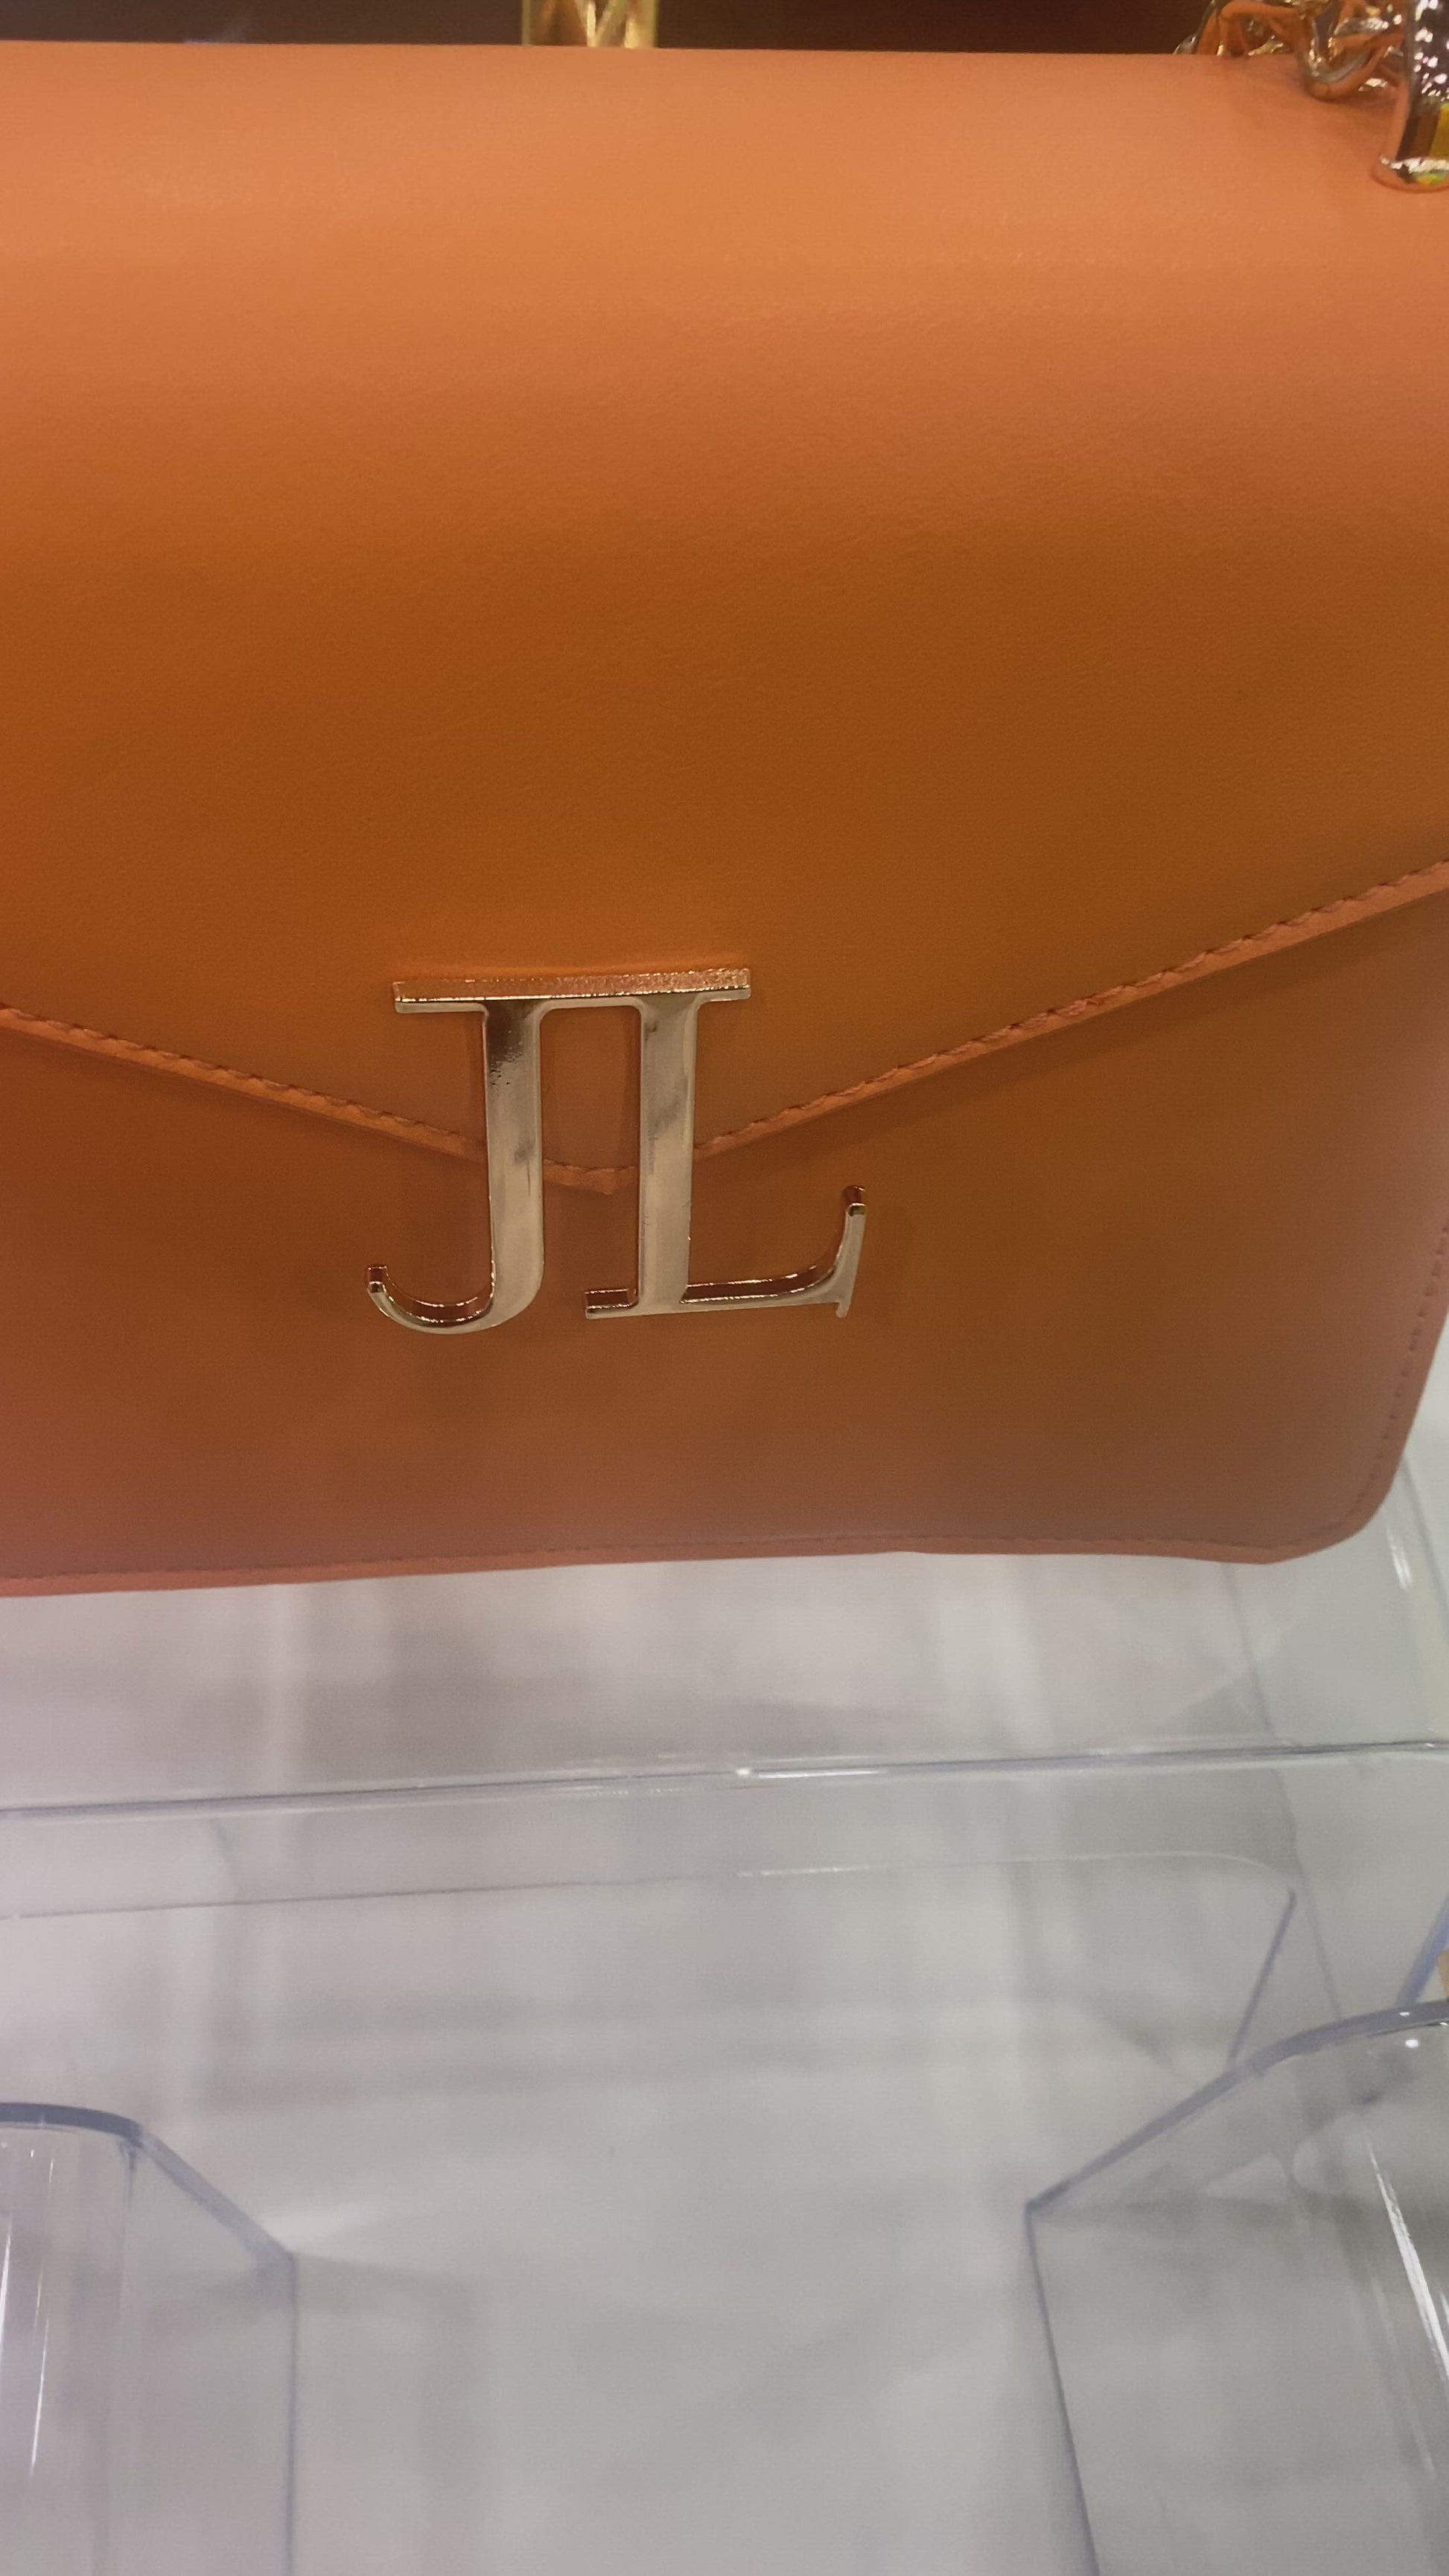 orange chain bag